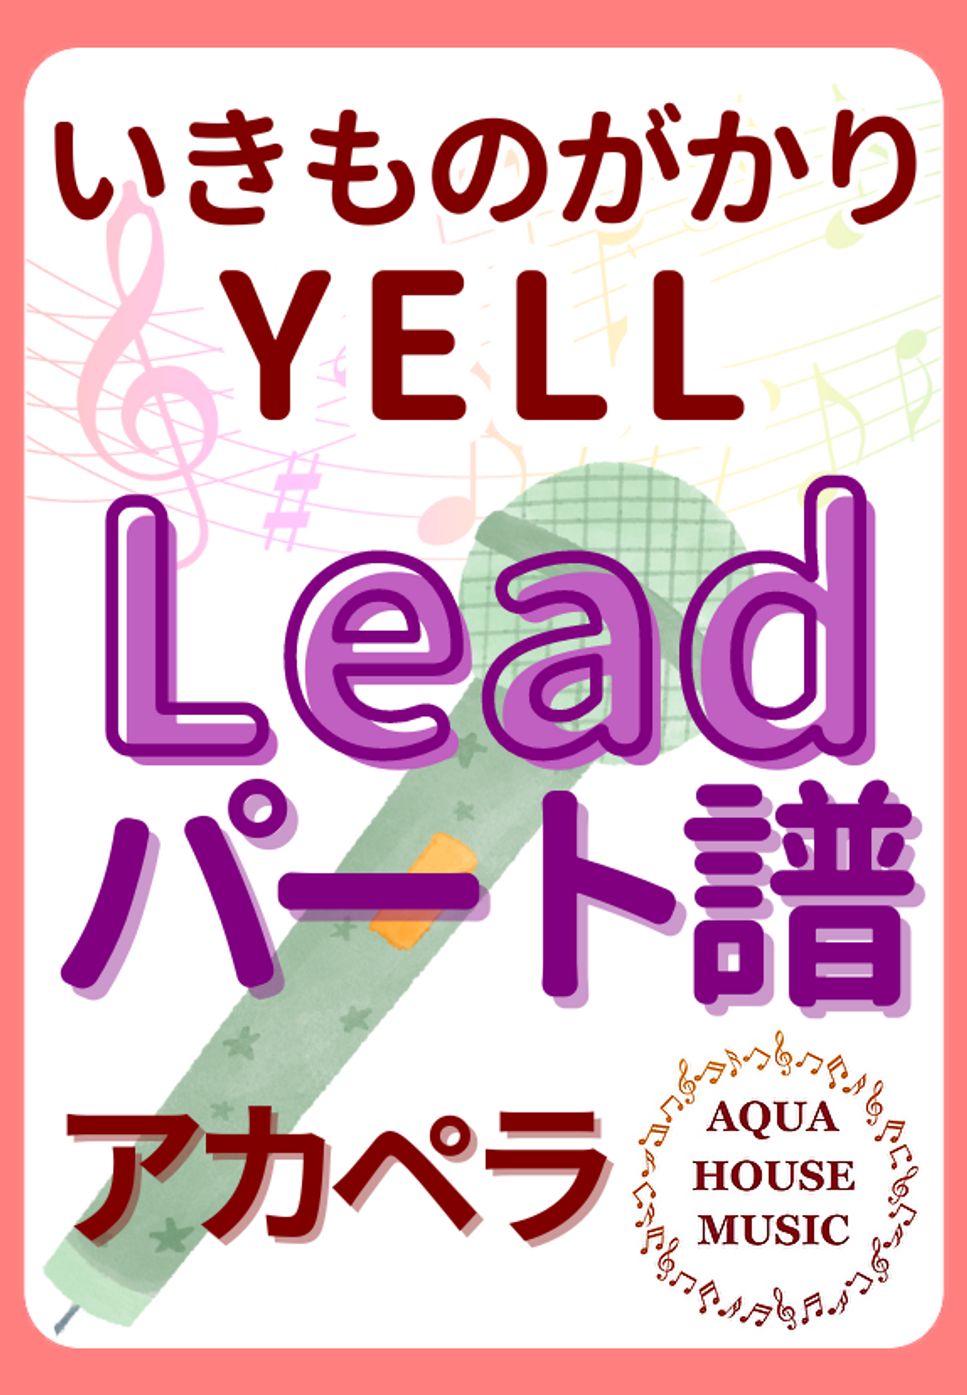 いきものがかり - YELL (アカペラ楽譜♪Leadパート譜) by 飯田 亜紗子